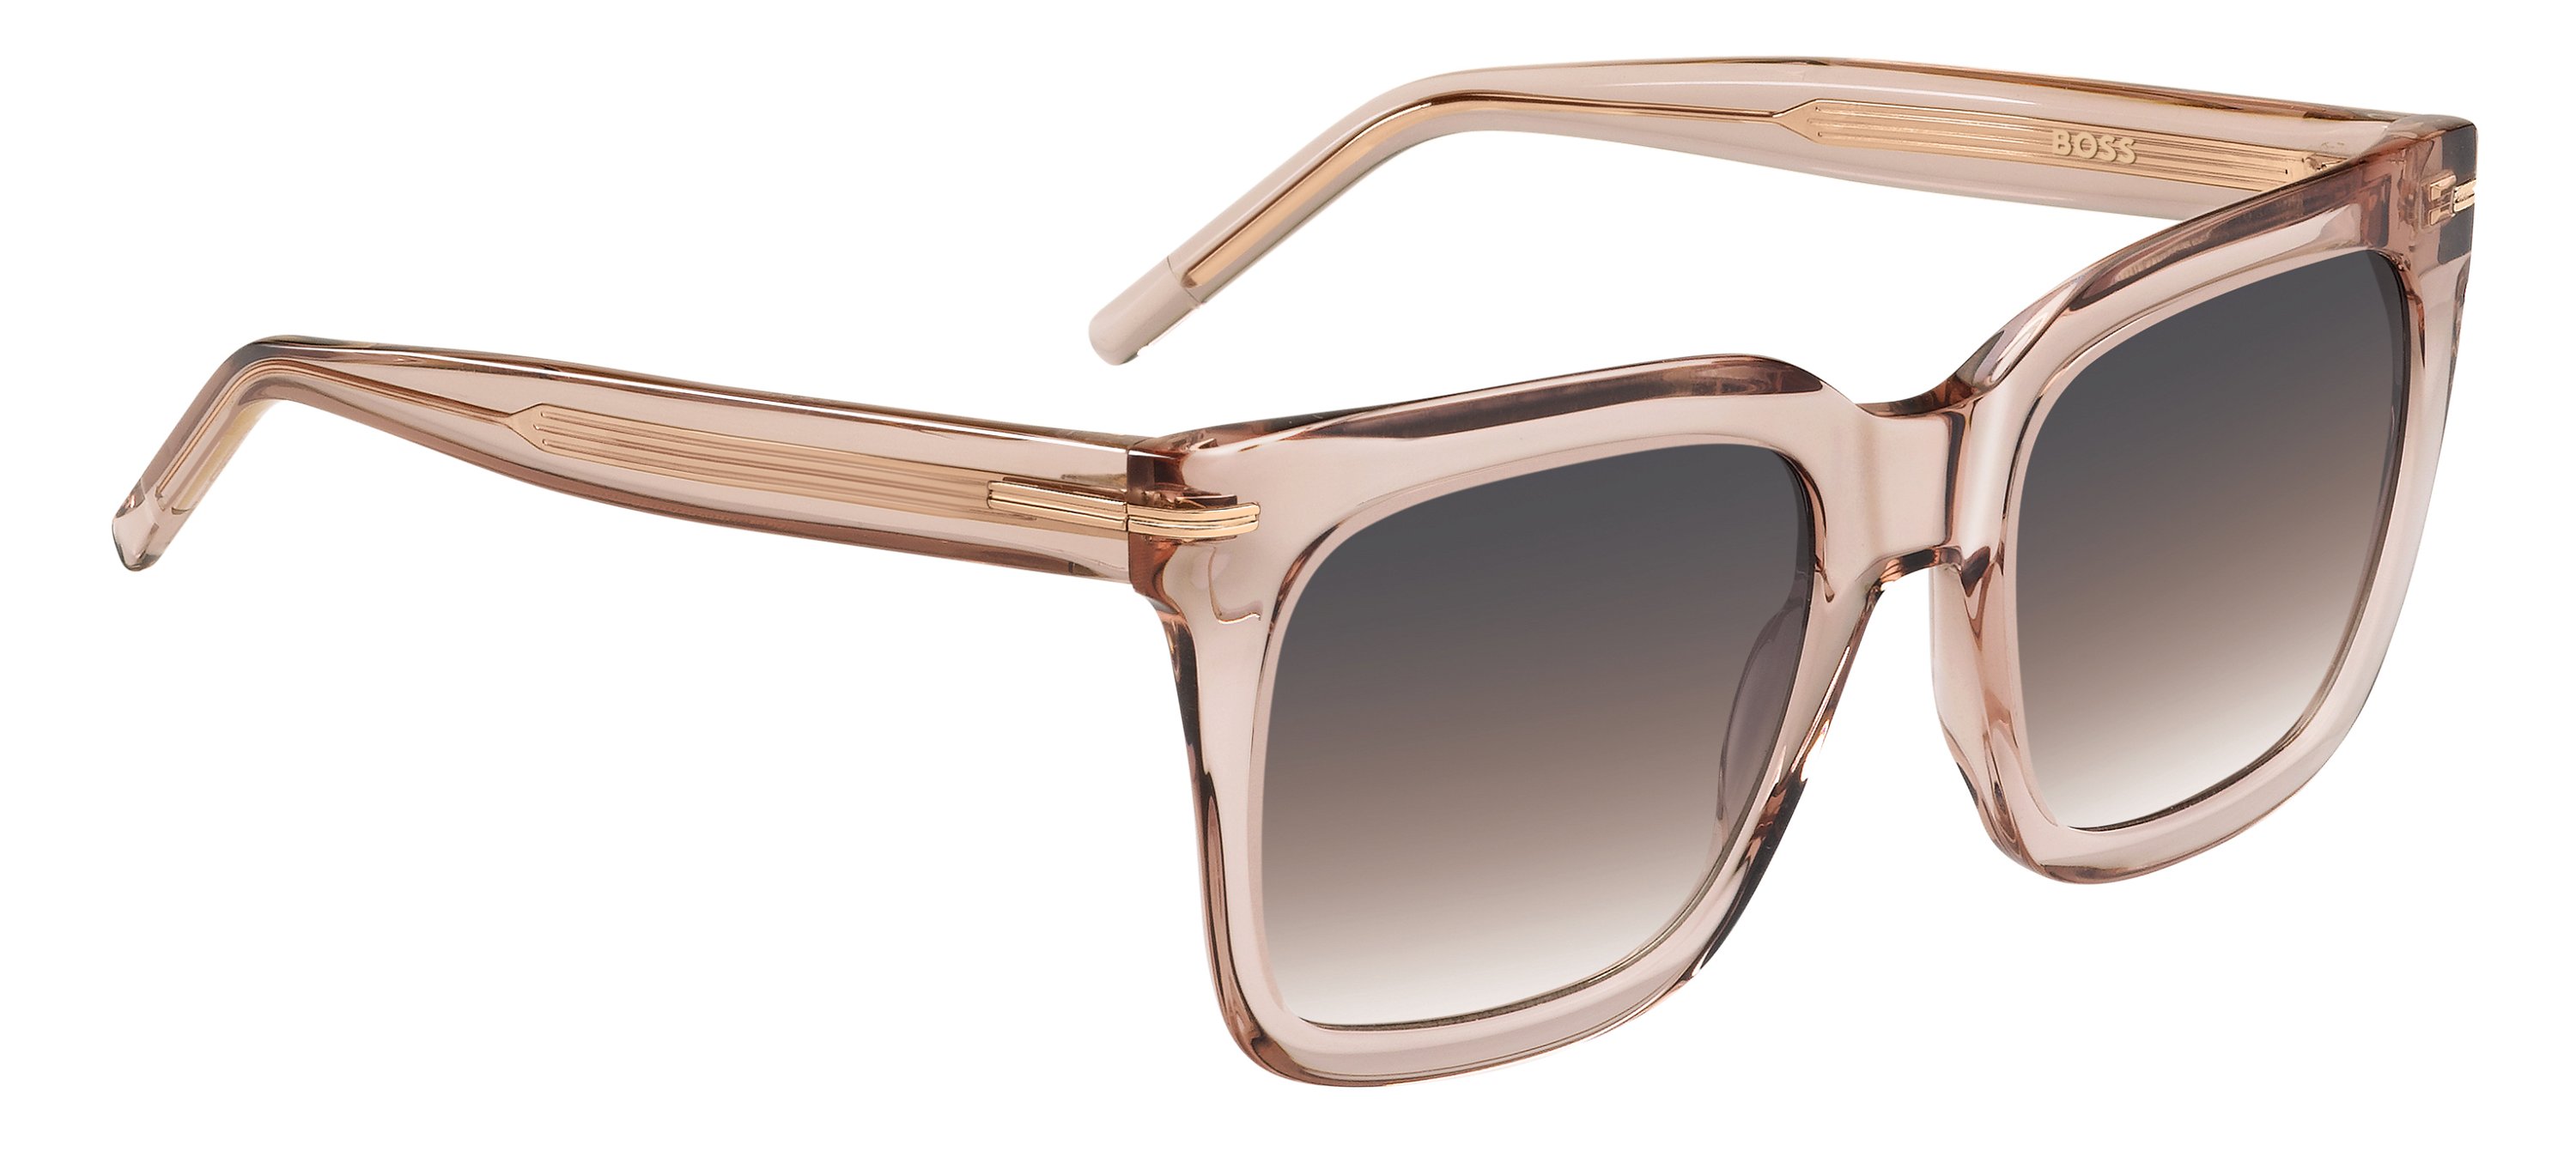 Das Bild zeigt die Sonnenbrille BOSS1656S 35J von der Marke BOSS in Pink.